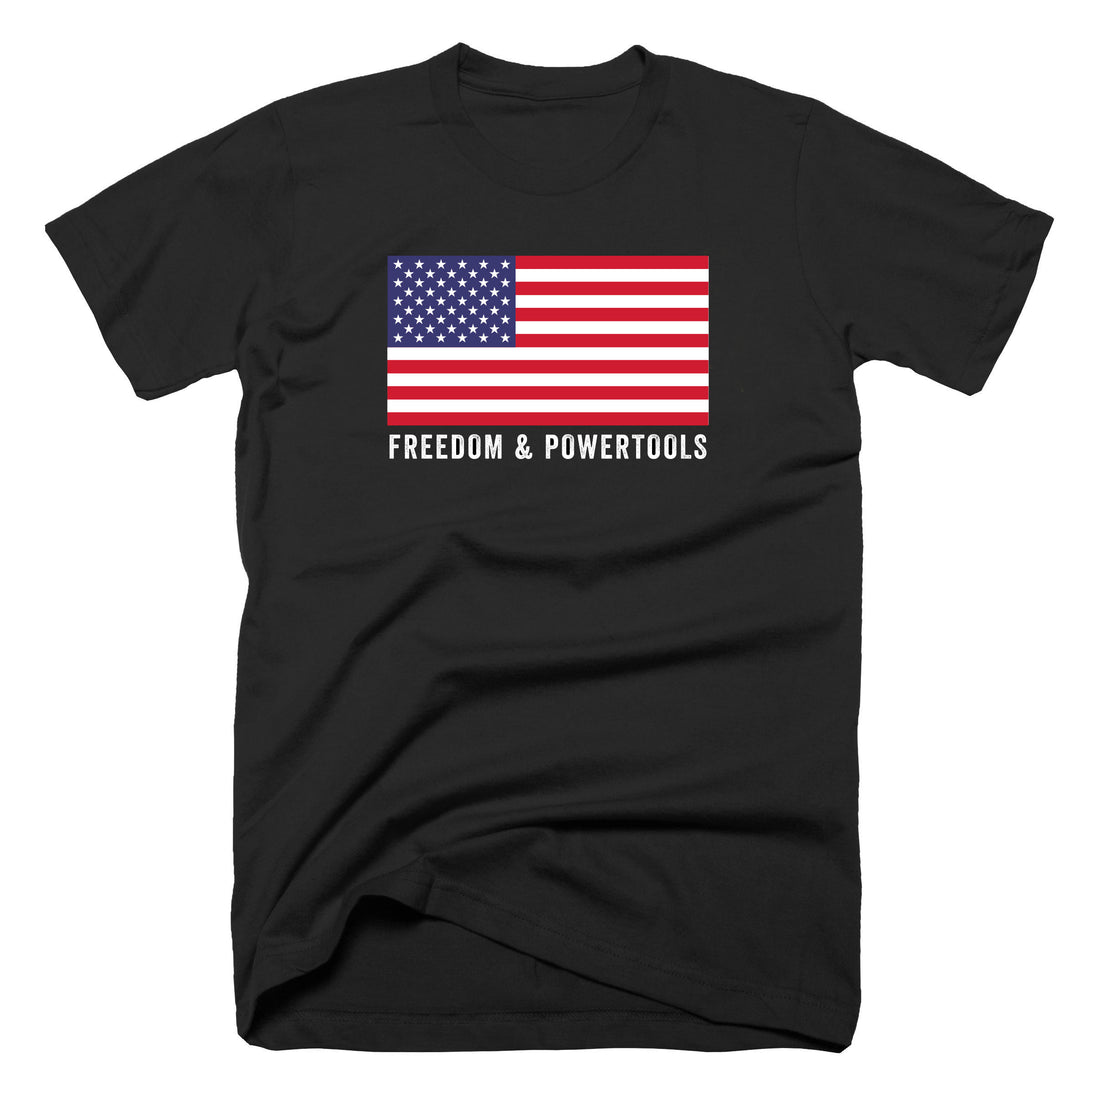 RWB Freedom & Powertools T-Shirt - John Malecki Store